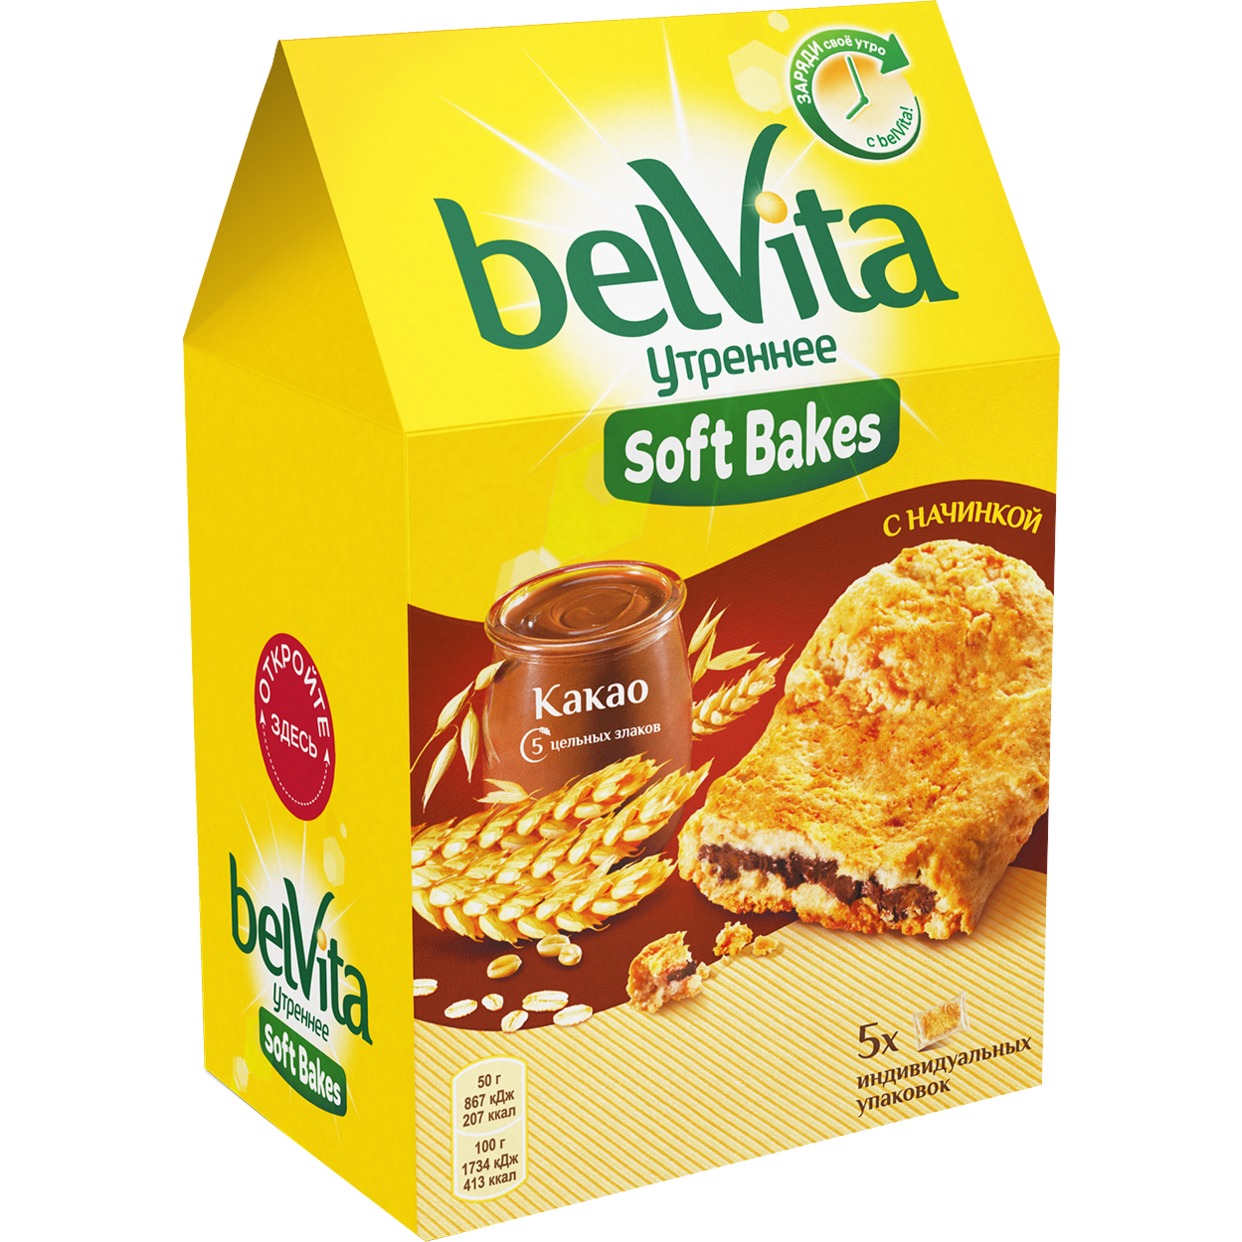 Печенье «BELVITA УТРЕННЕЕ» Софт Бэйкс с цельнозерновыми злаками и с начинкой с какао, 250 гр по акции в Пятерочке